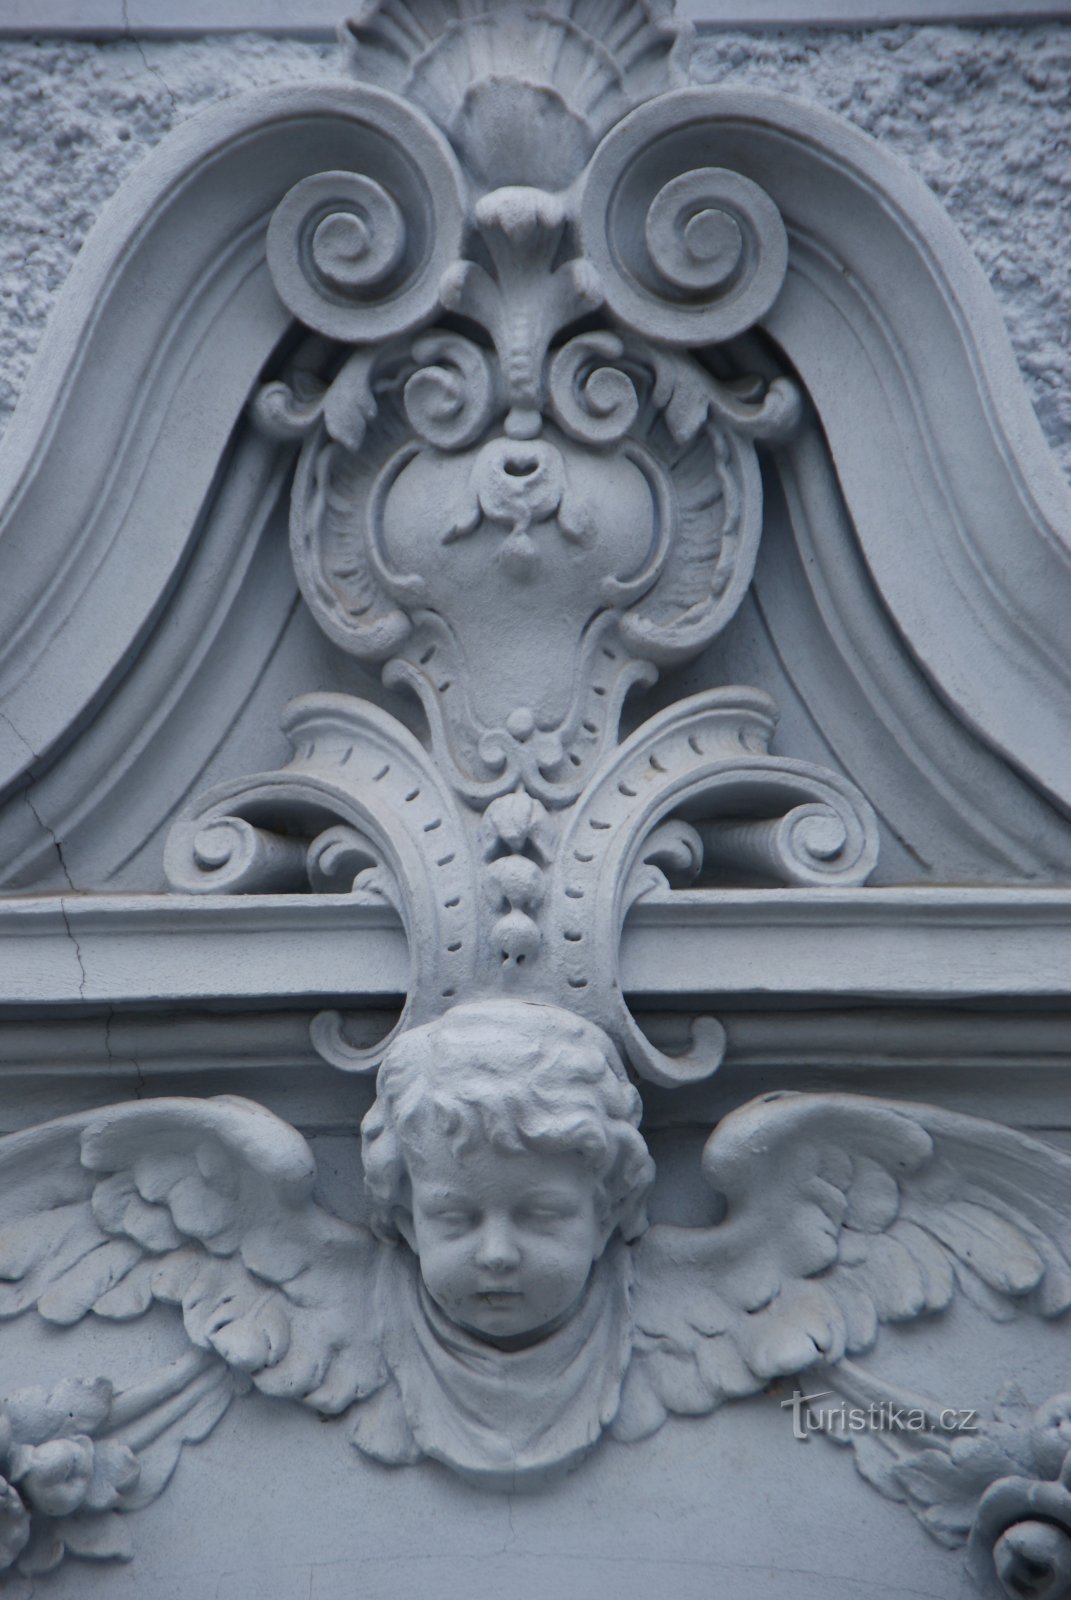 detalhe da decoração da fachada